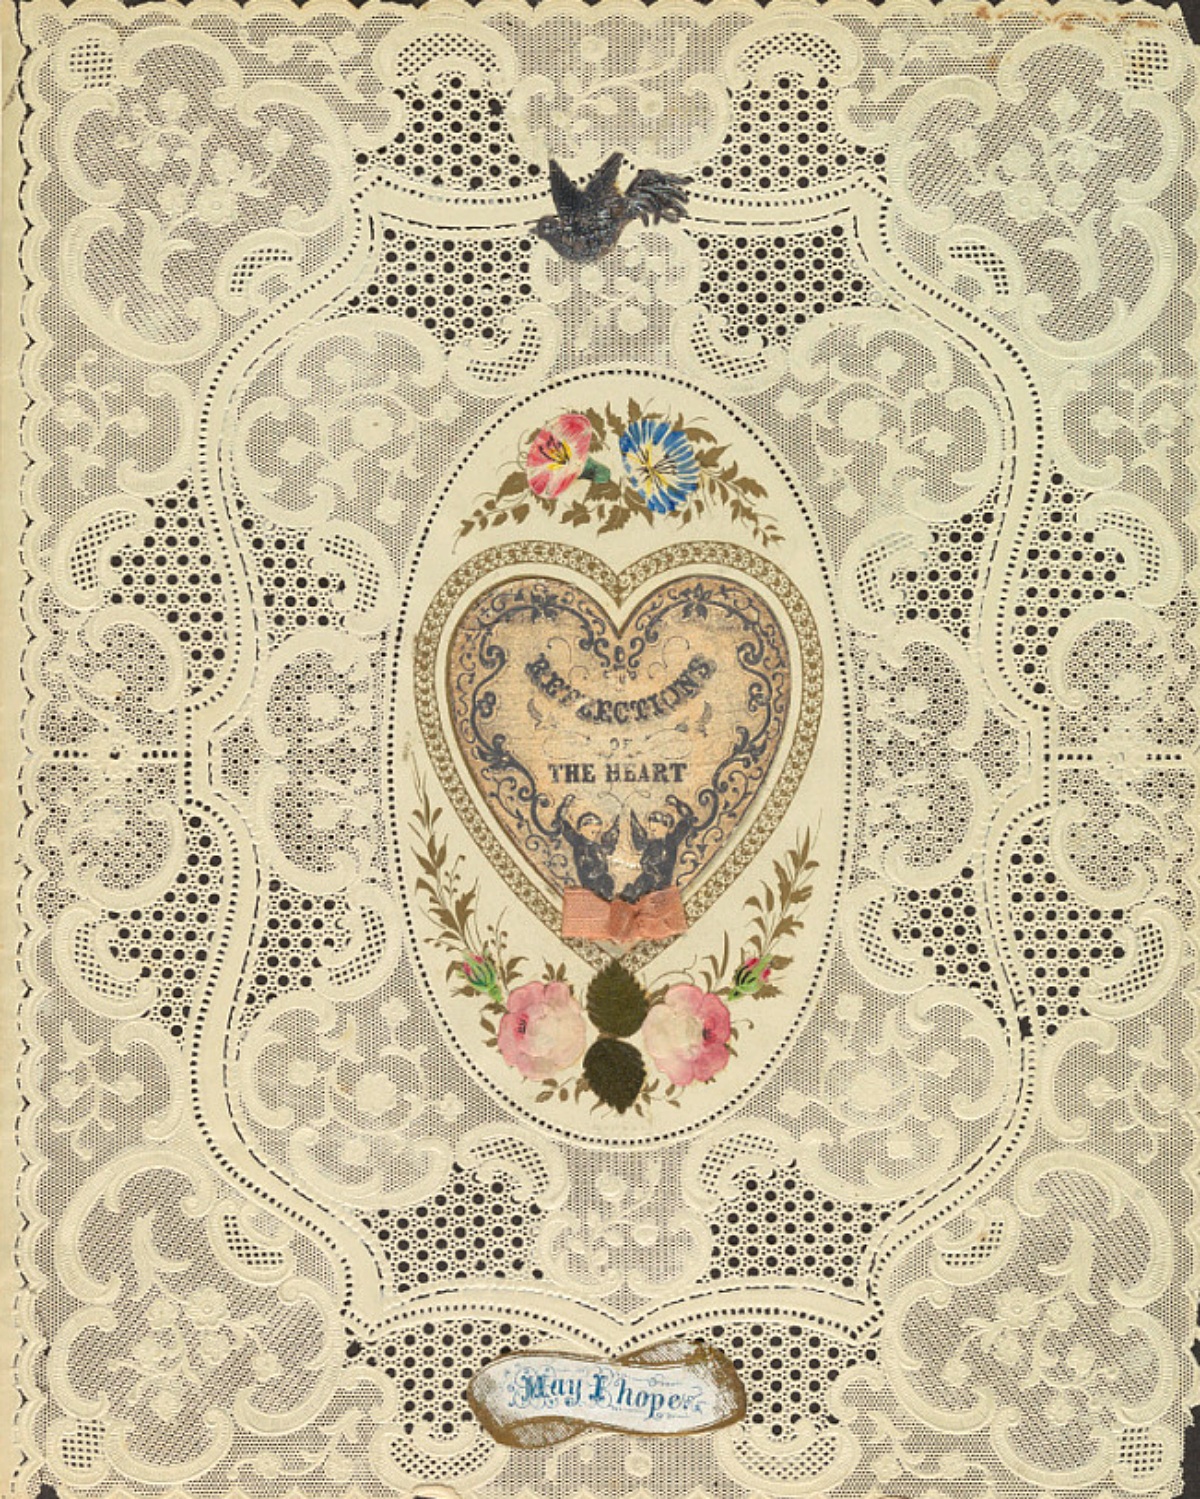 1850s Valentine's Day card